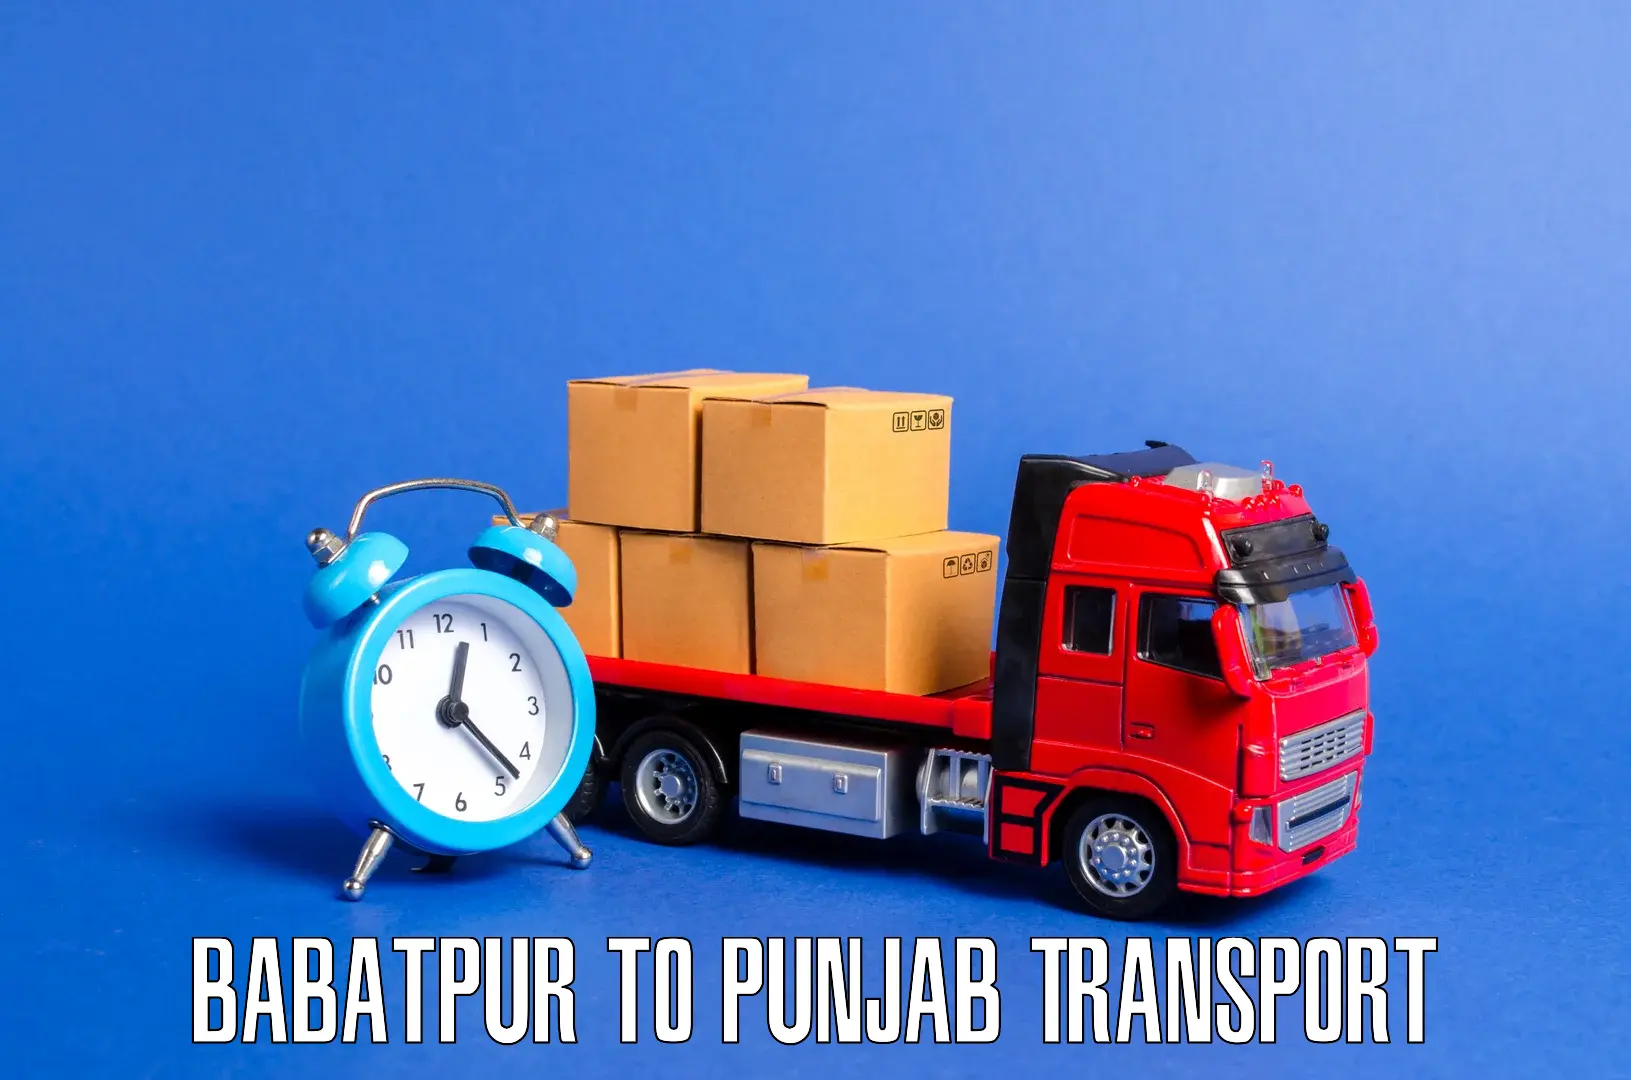 Online transport booking Babatpur to Patti Tarn Tara